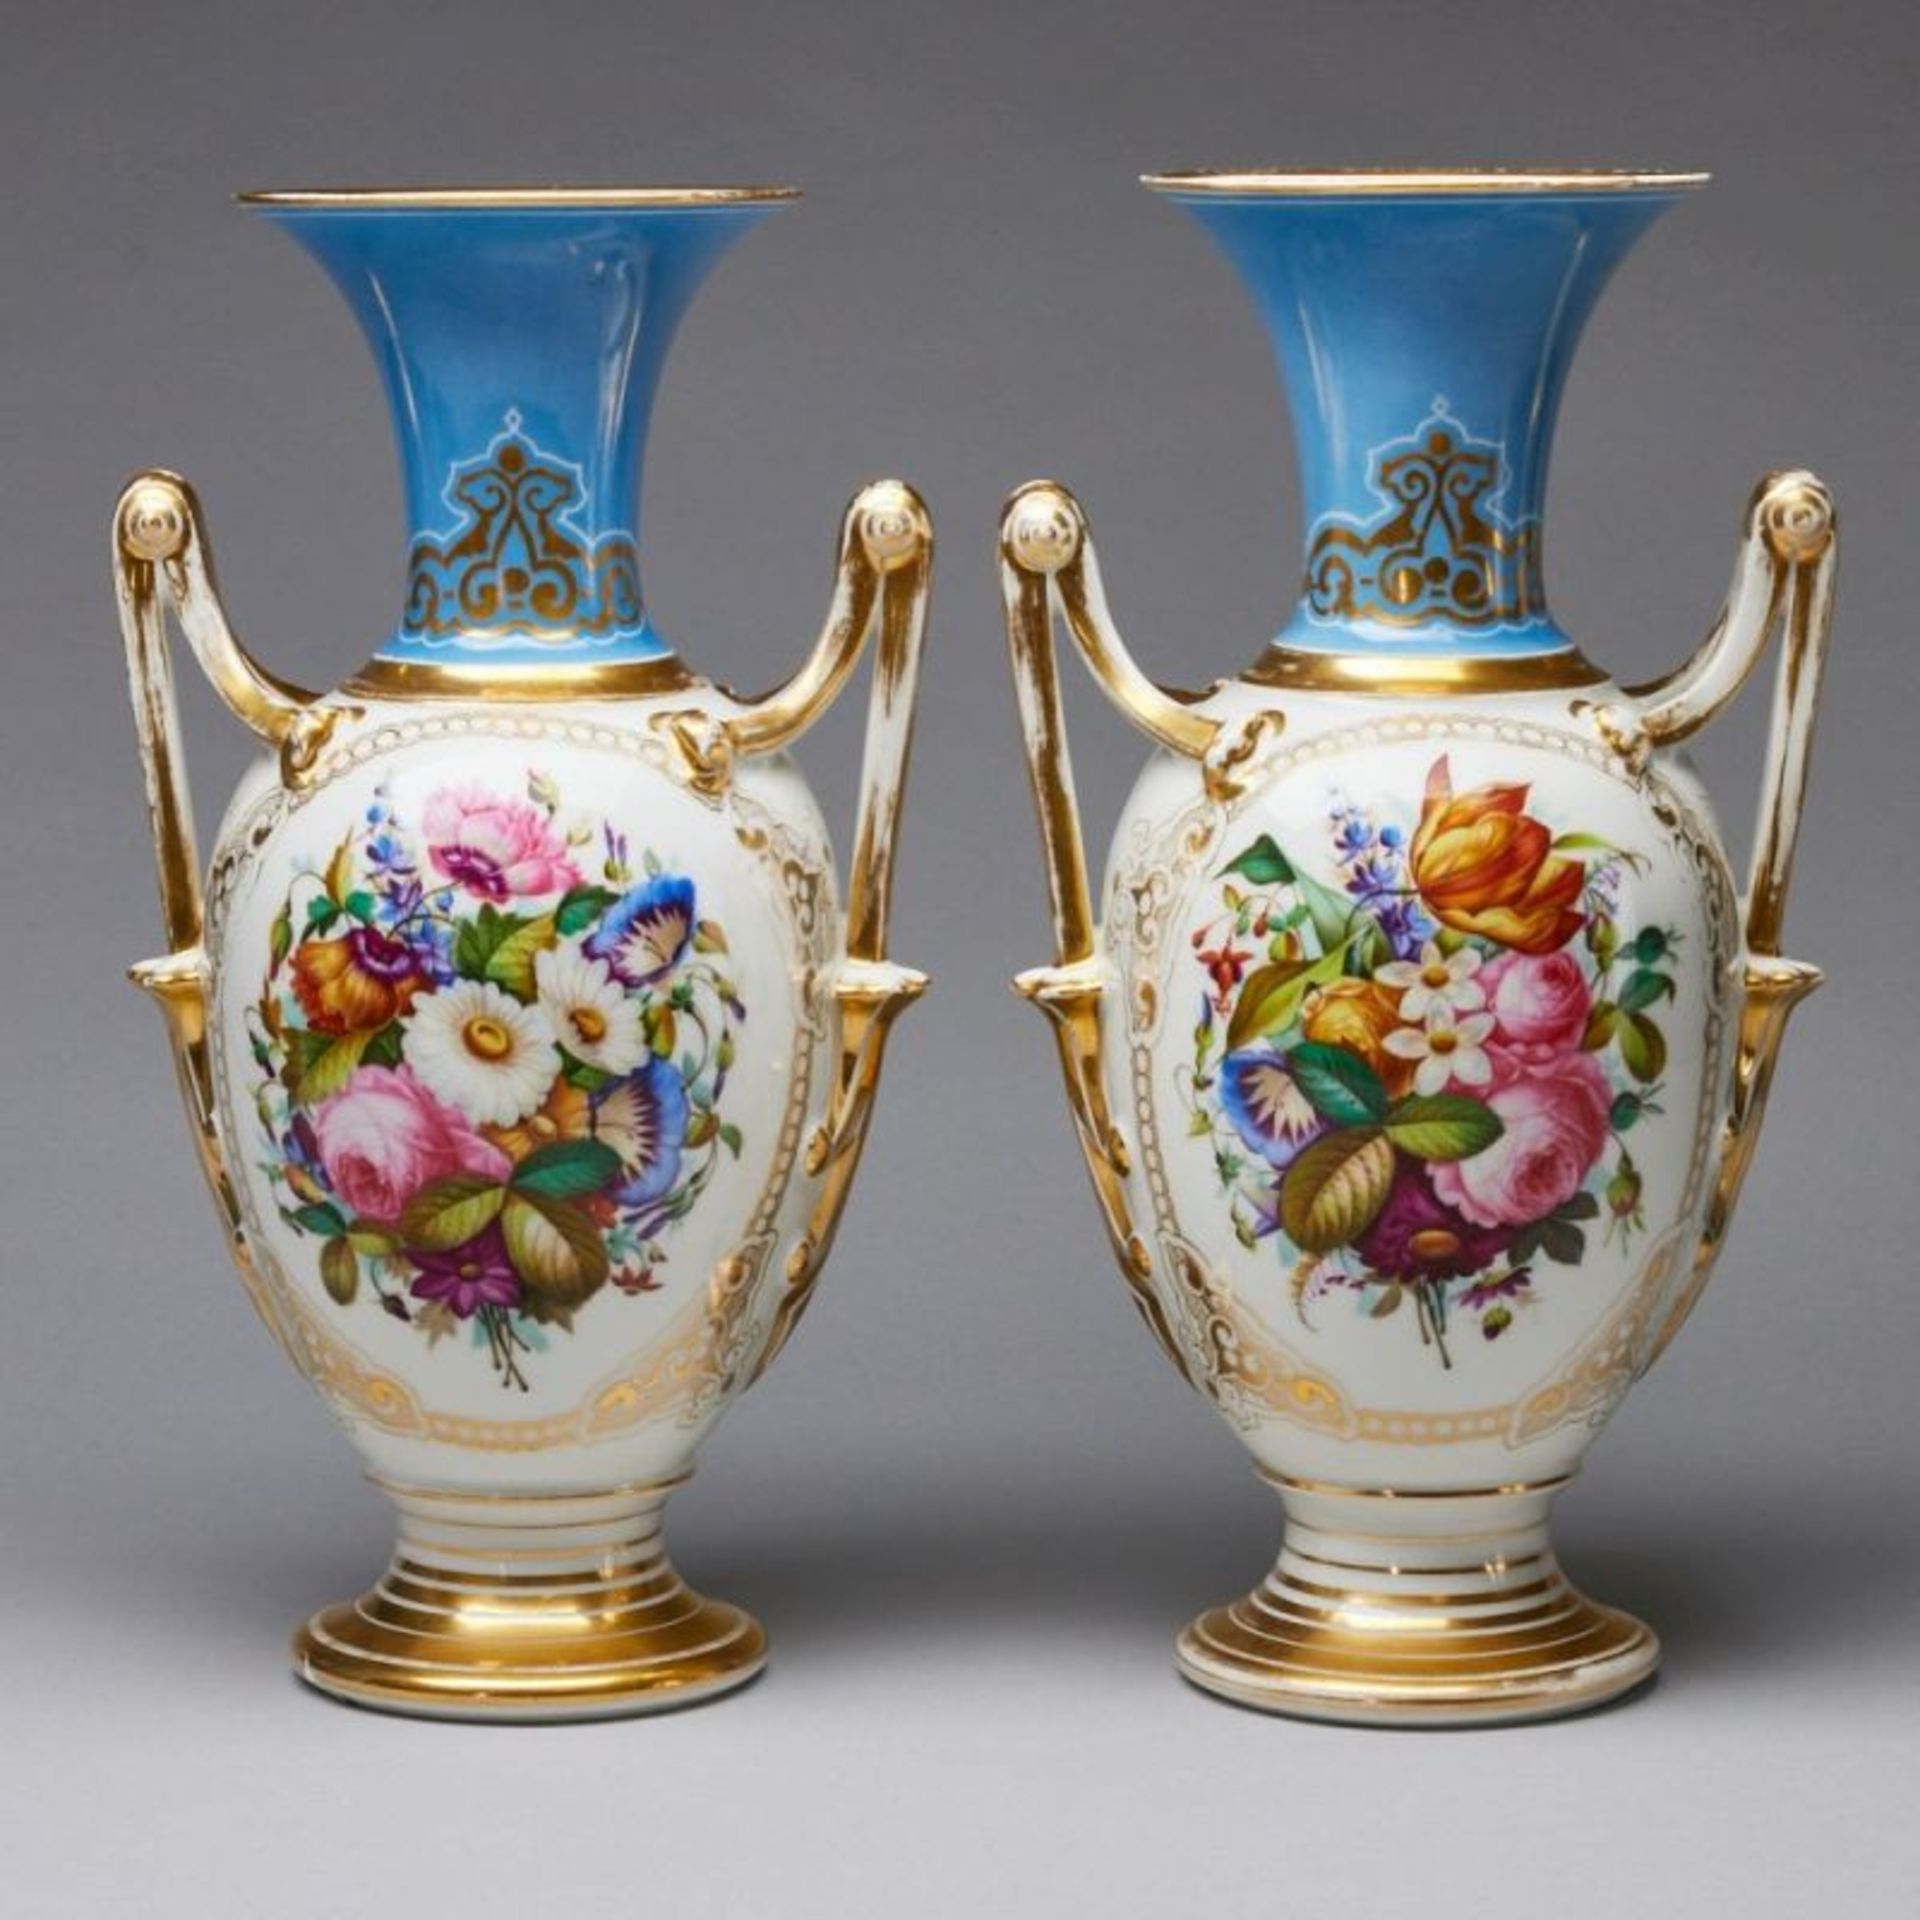 Paar Vasen mit hochgezogenen Volutenhenkeln - Blumenbukett und Fruchtmalerei. Frankreich, 19. Jh.